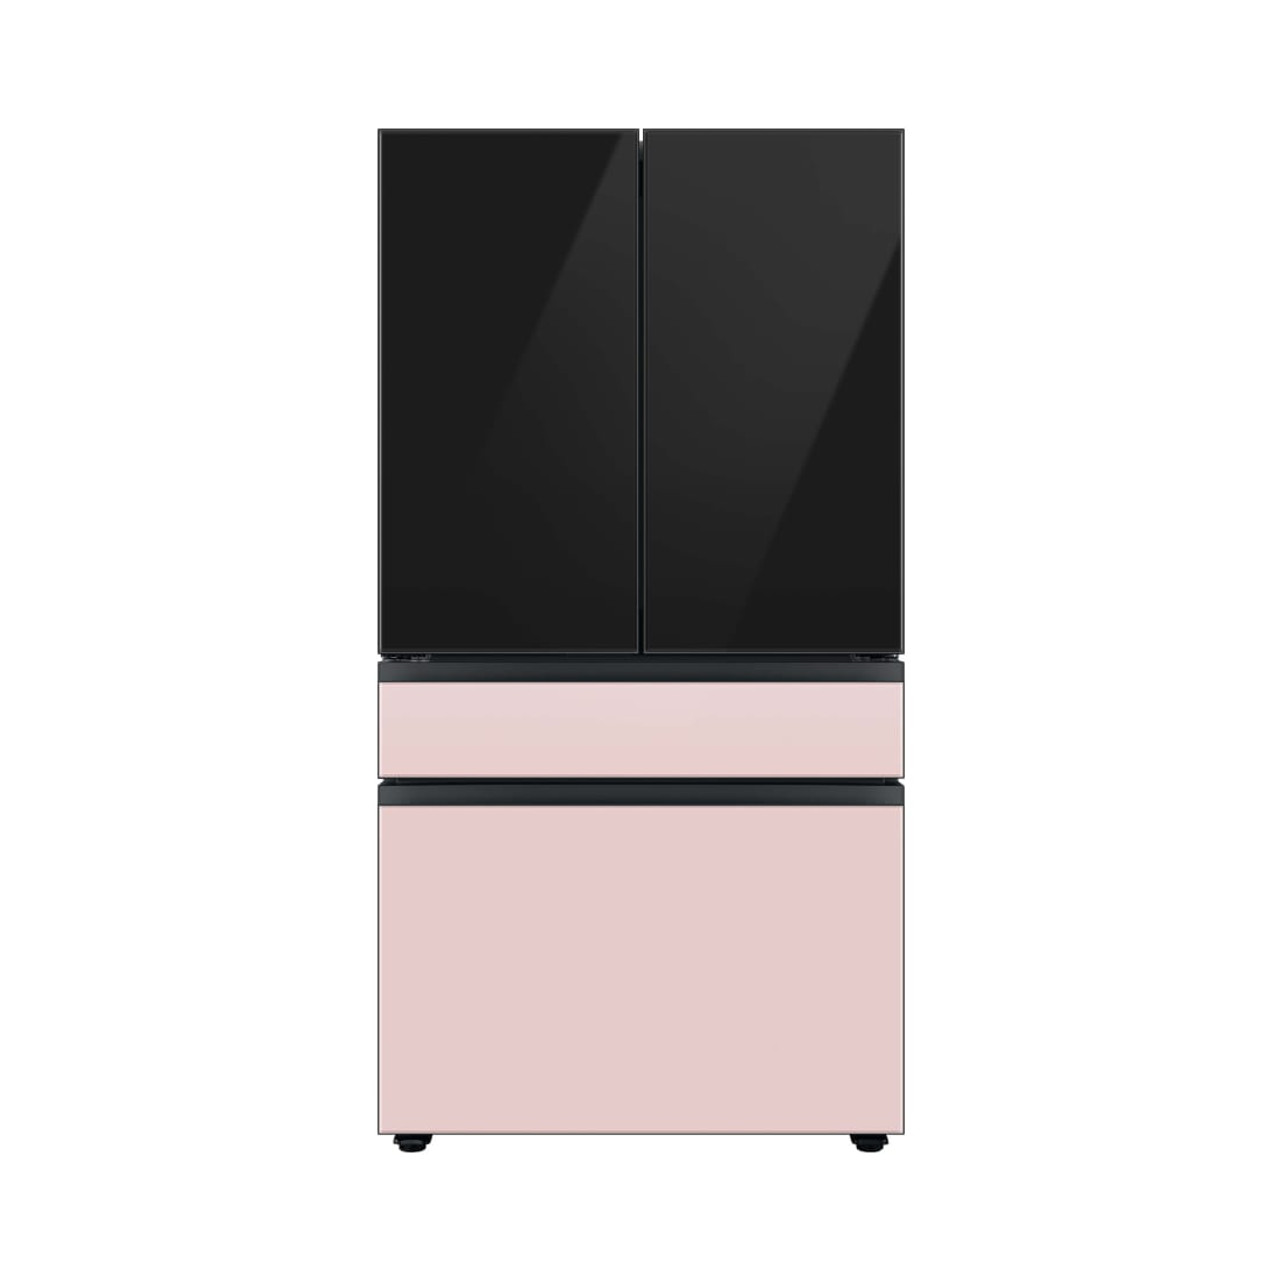 Samsung BESPOKE 4-Door French Door Middle Panel  in Pink Glass